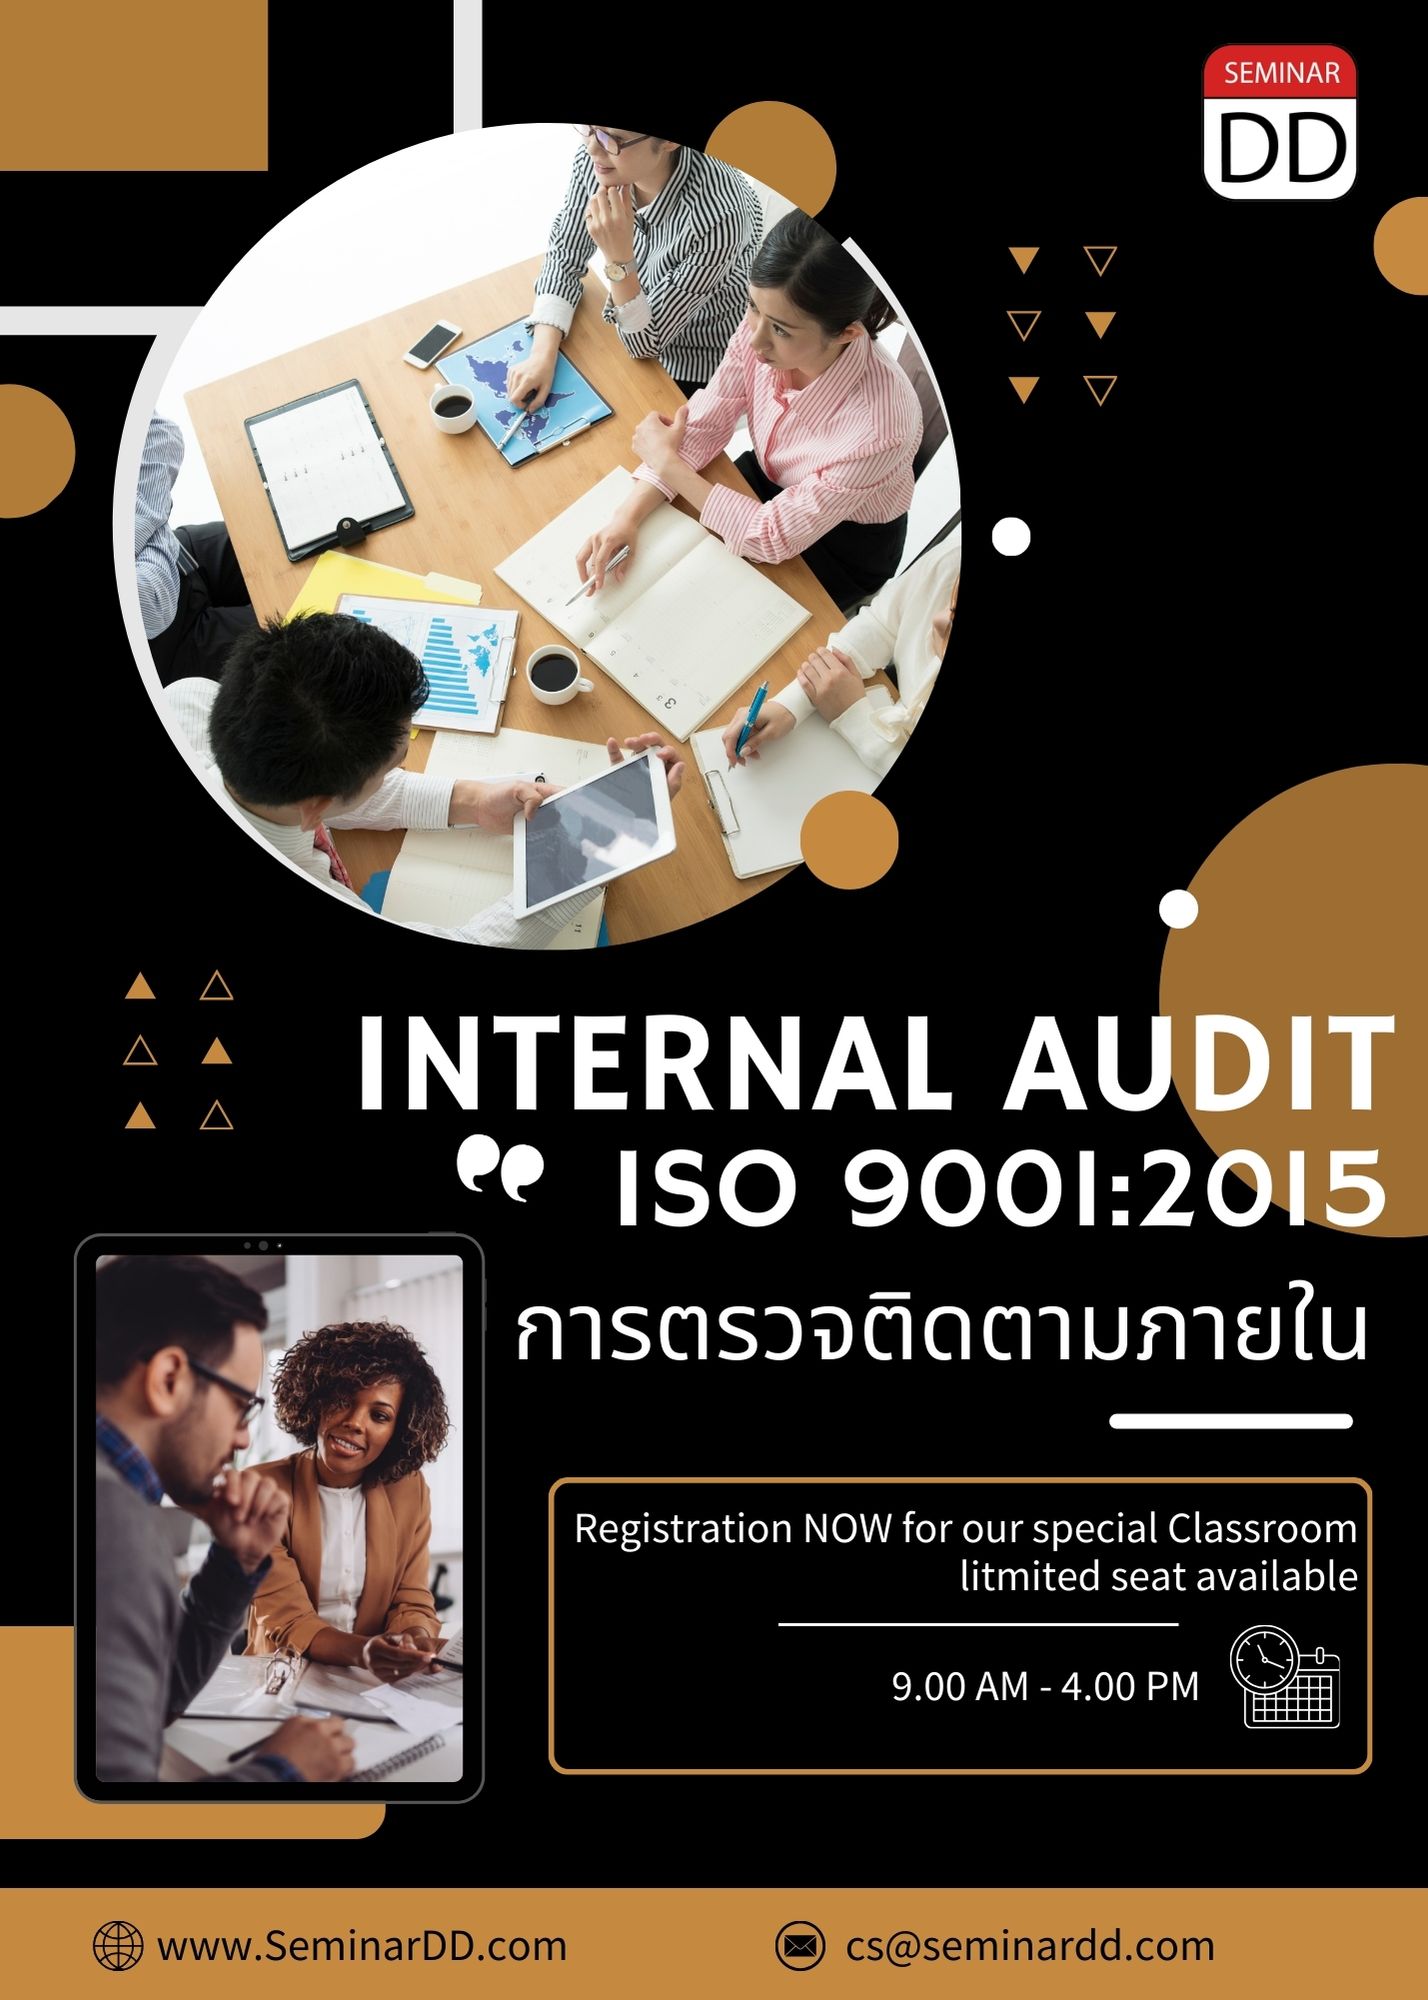 หลักสูตรอบรม การตรวจติดตามภายใน ISO 9001:2015  (Internal Audit ISO 9001:2015)